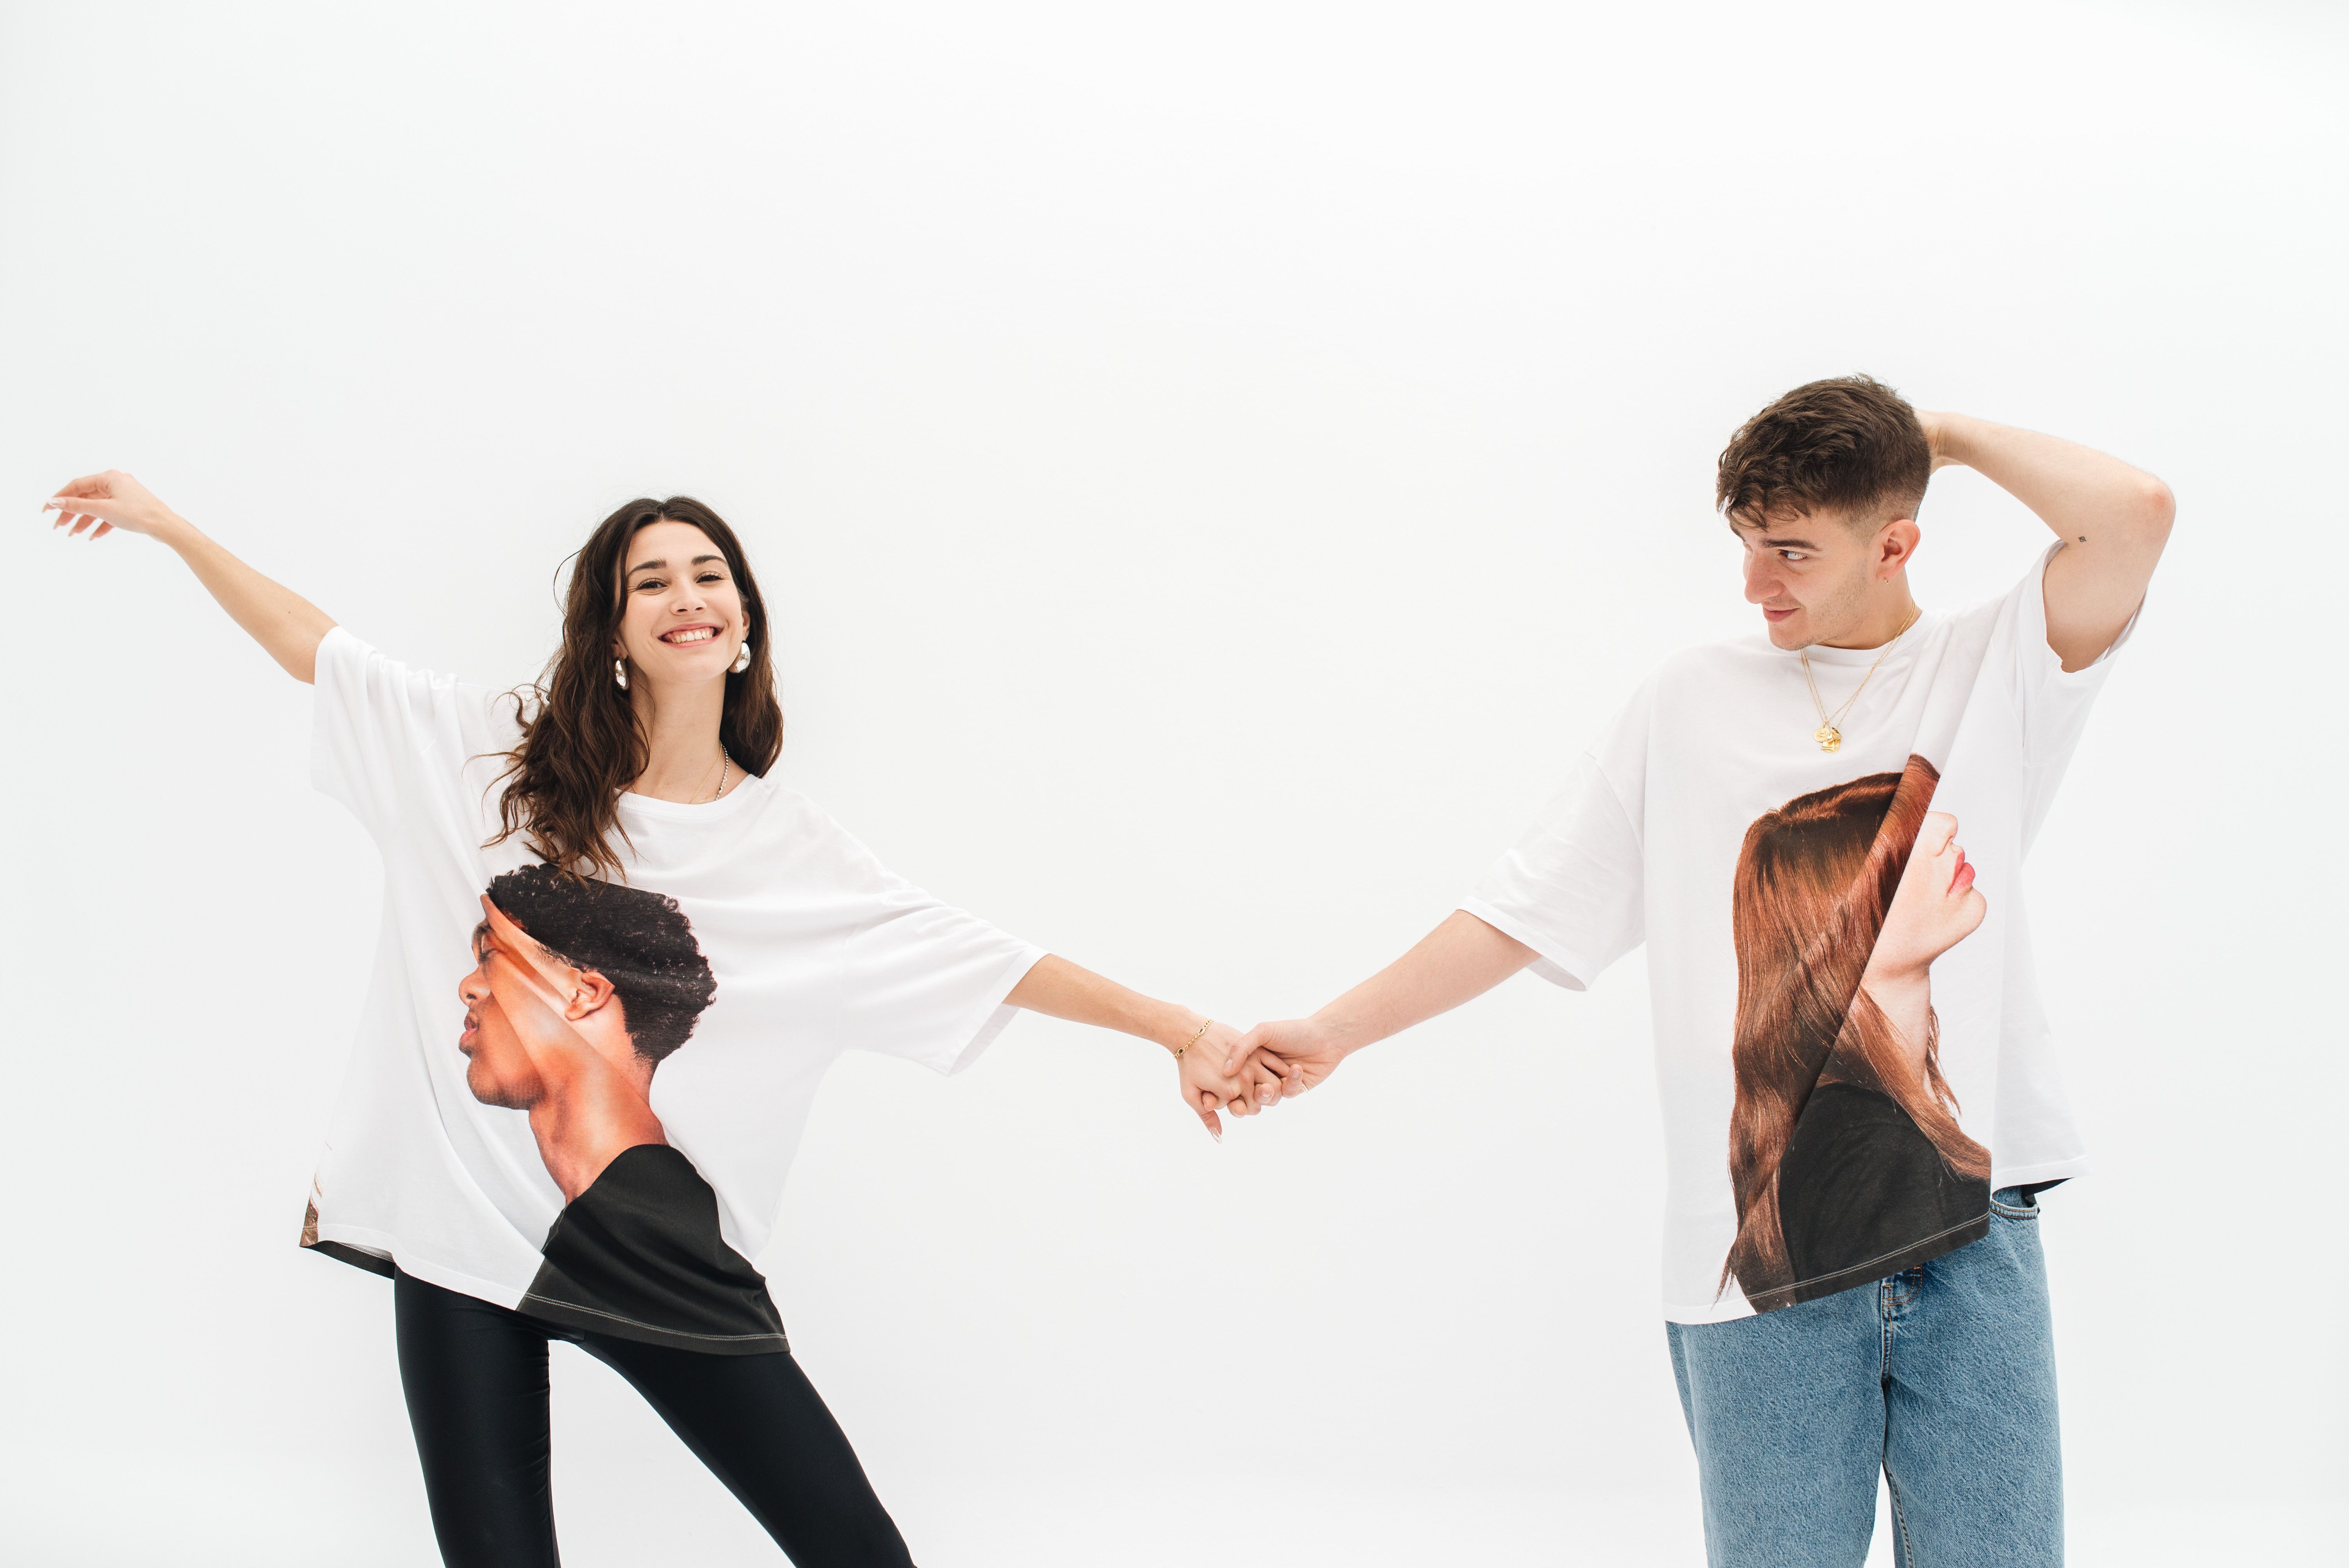 Bershka lanza colección de camisetas (unisex) para celebrar San Valentín - Bershka tiene el regalo perfecto para romper las y celebrar San